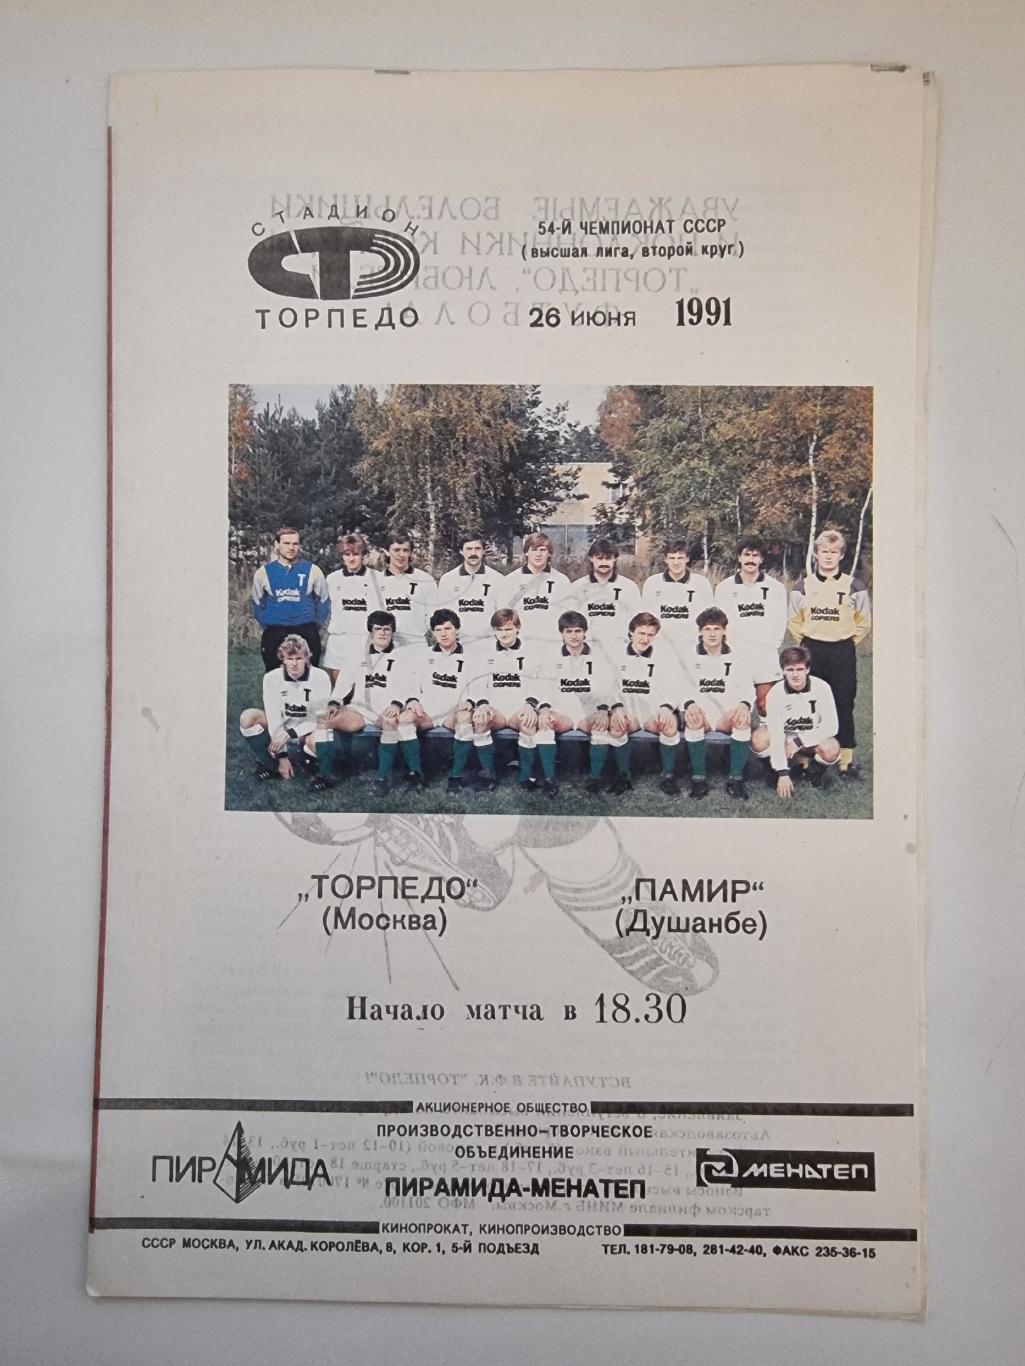 Торпедо Москва - Памир Душамбе 1991 (белая форма).